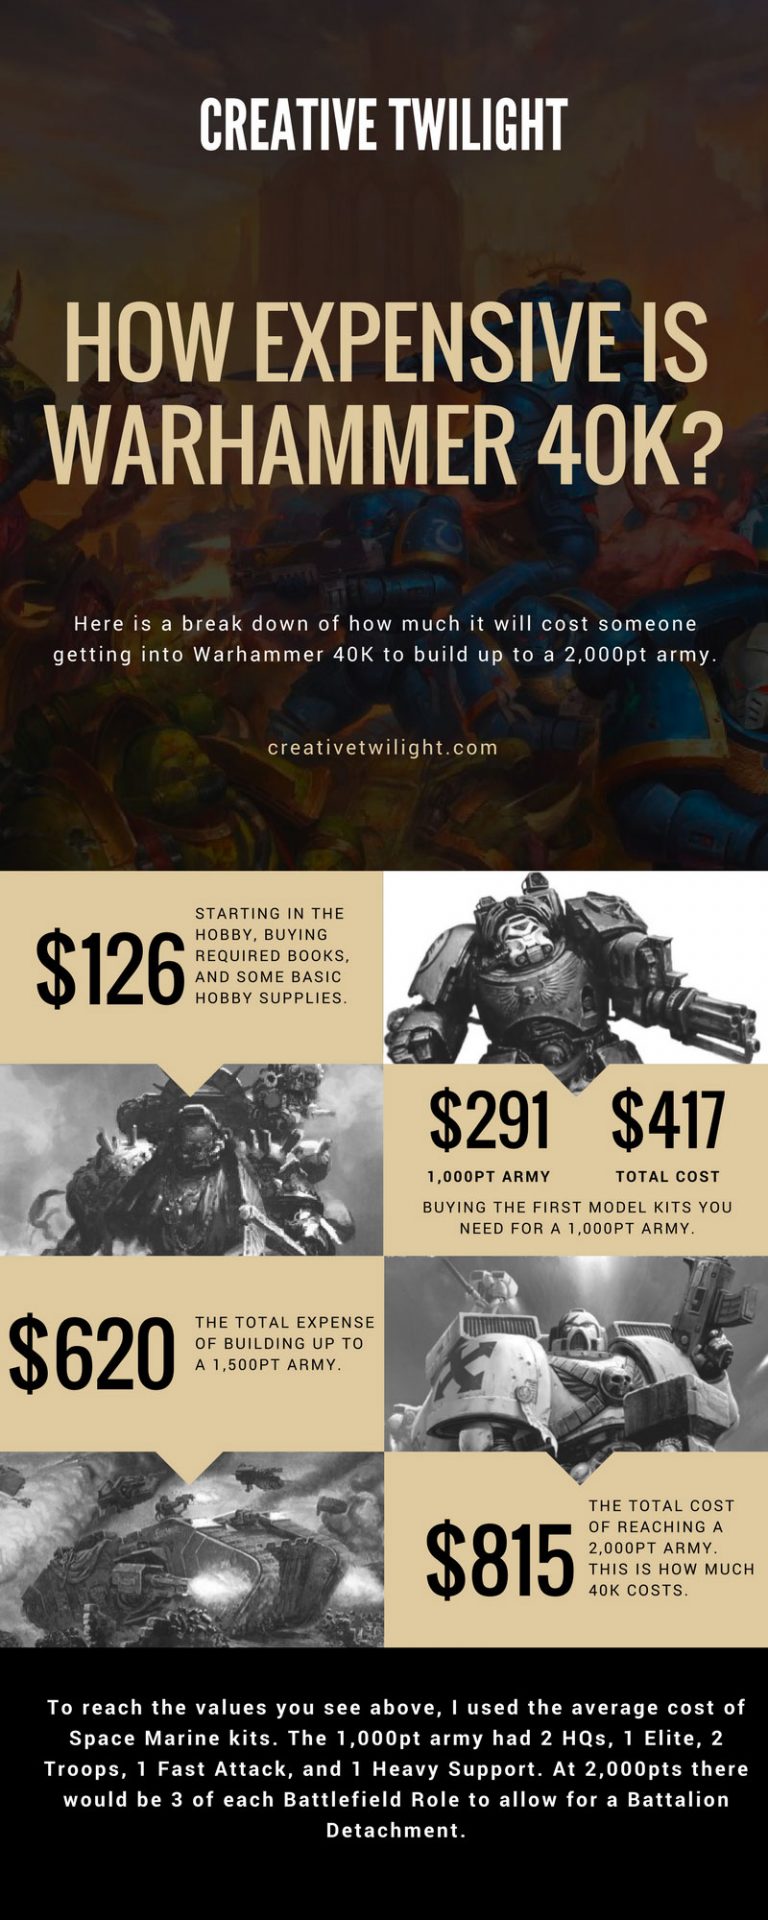 How Much Money Is Warhammer Worth?